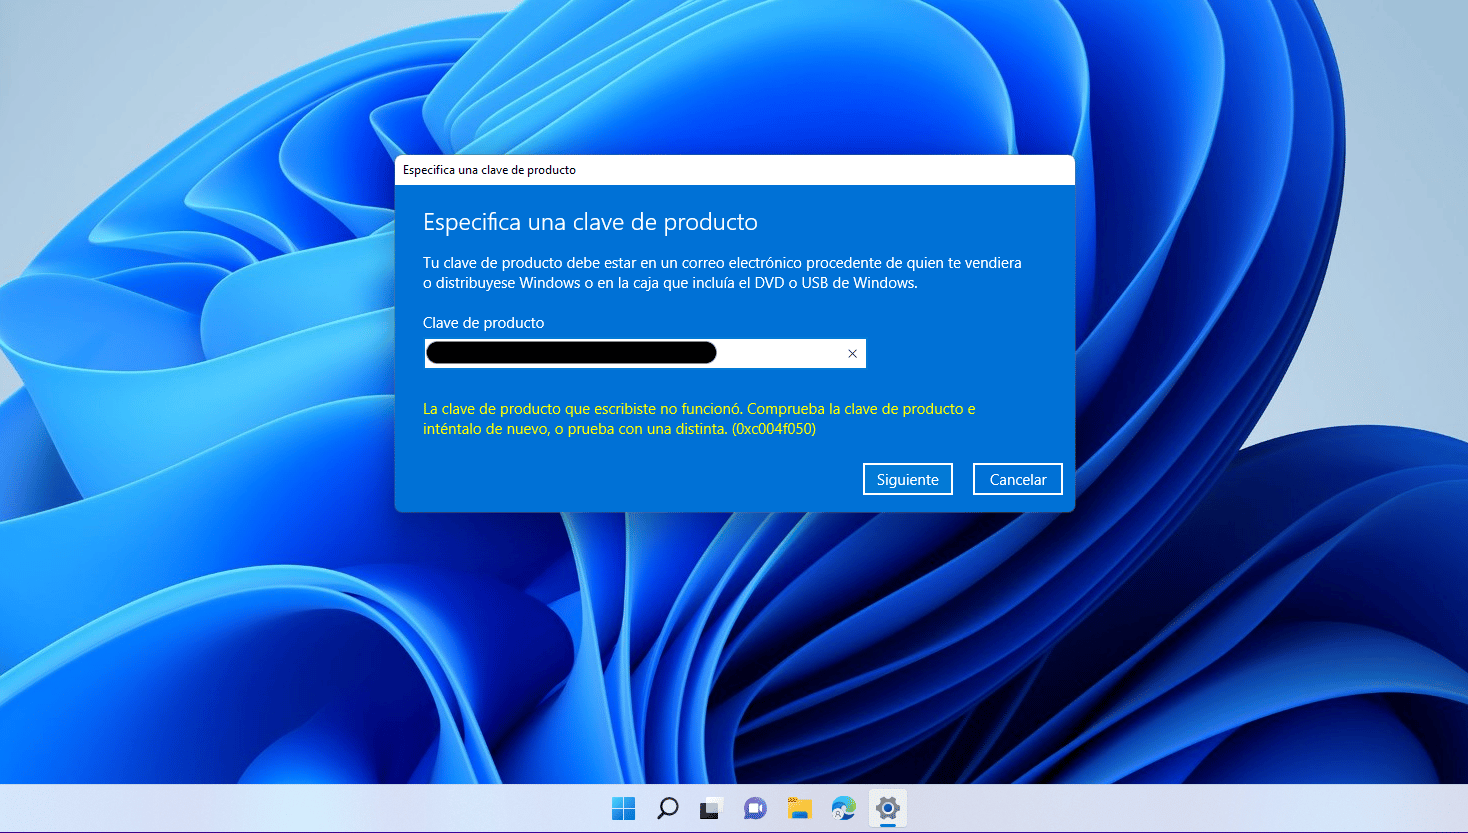 Error de activación de Windows 10 0xc004f050